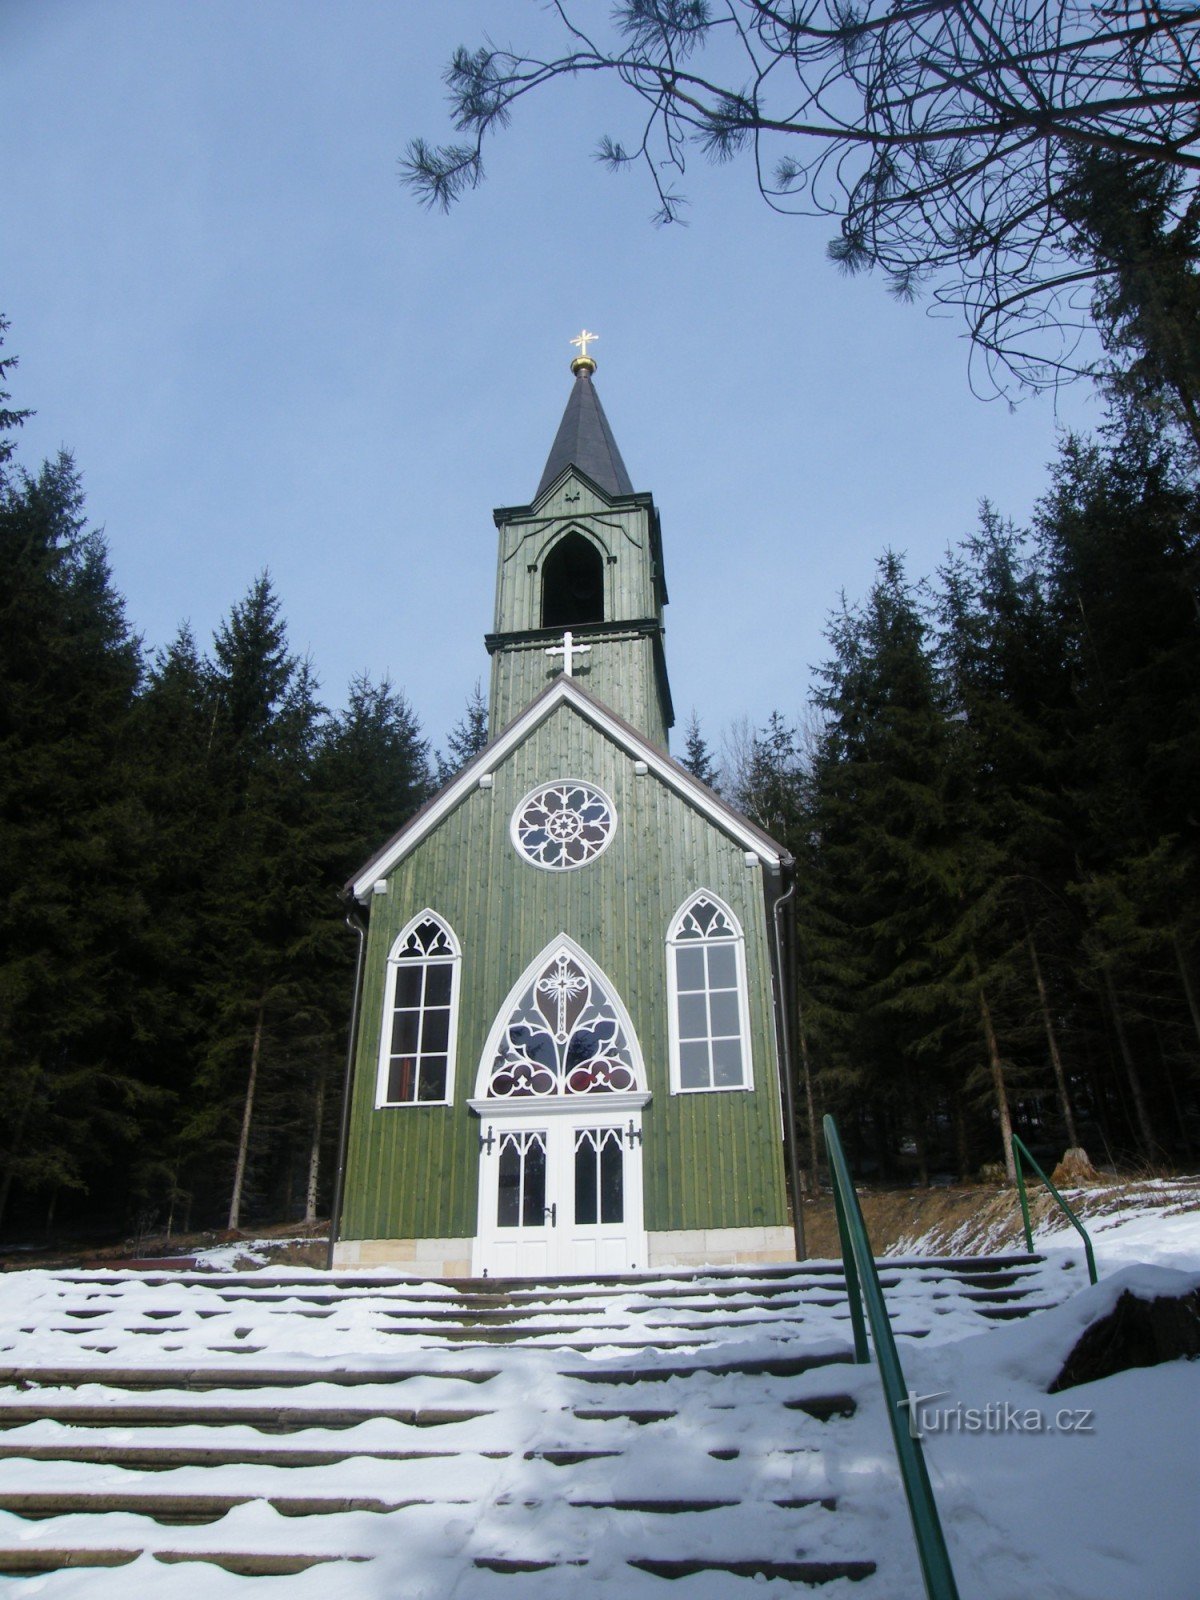 Chapel in Ticháček forest